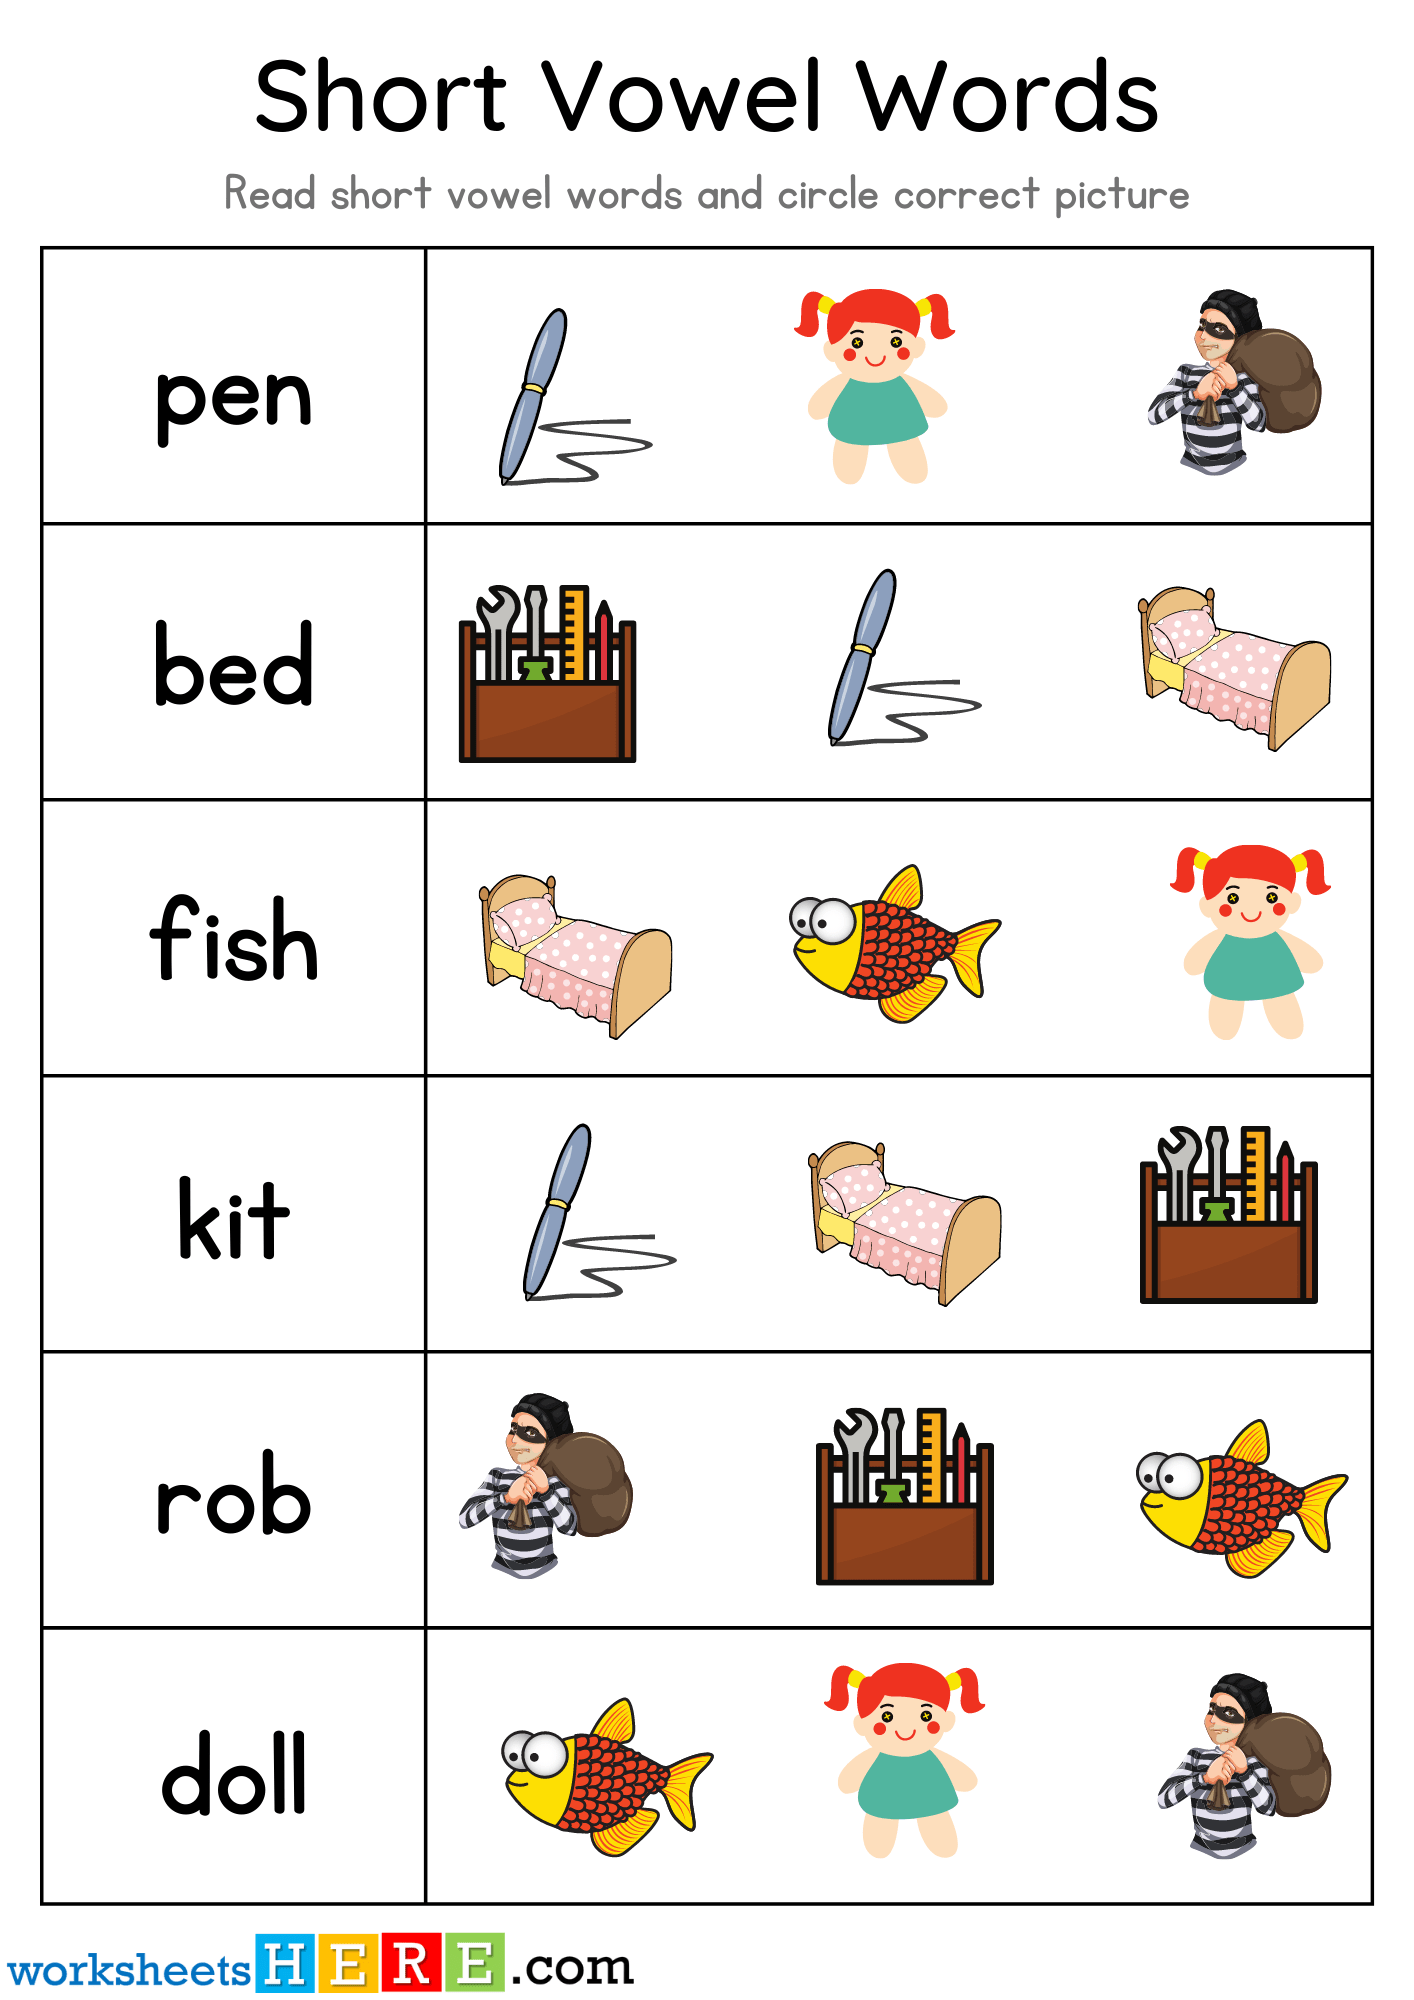 Short Vowel Words Matching PDF Worksheet For Kids